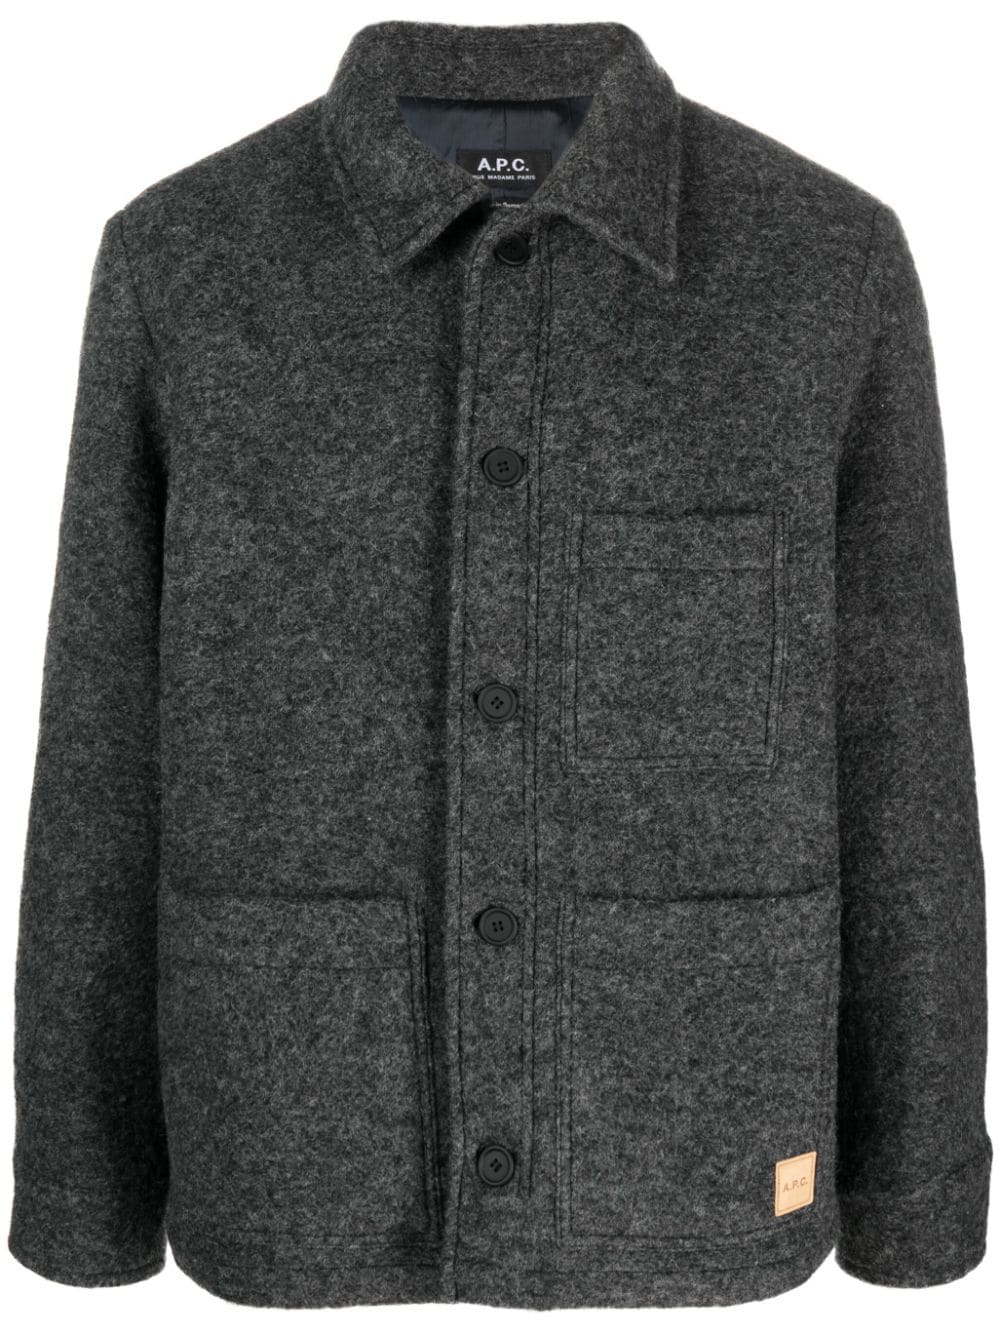 A.P.C. wool-blend jacket - Grey